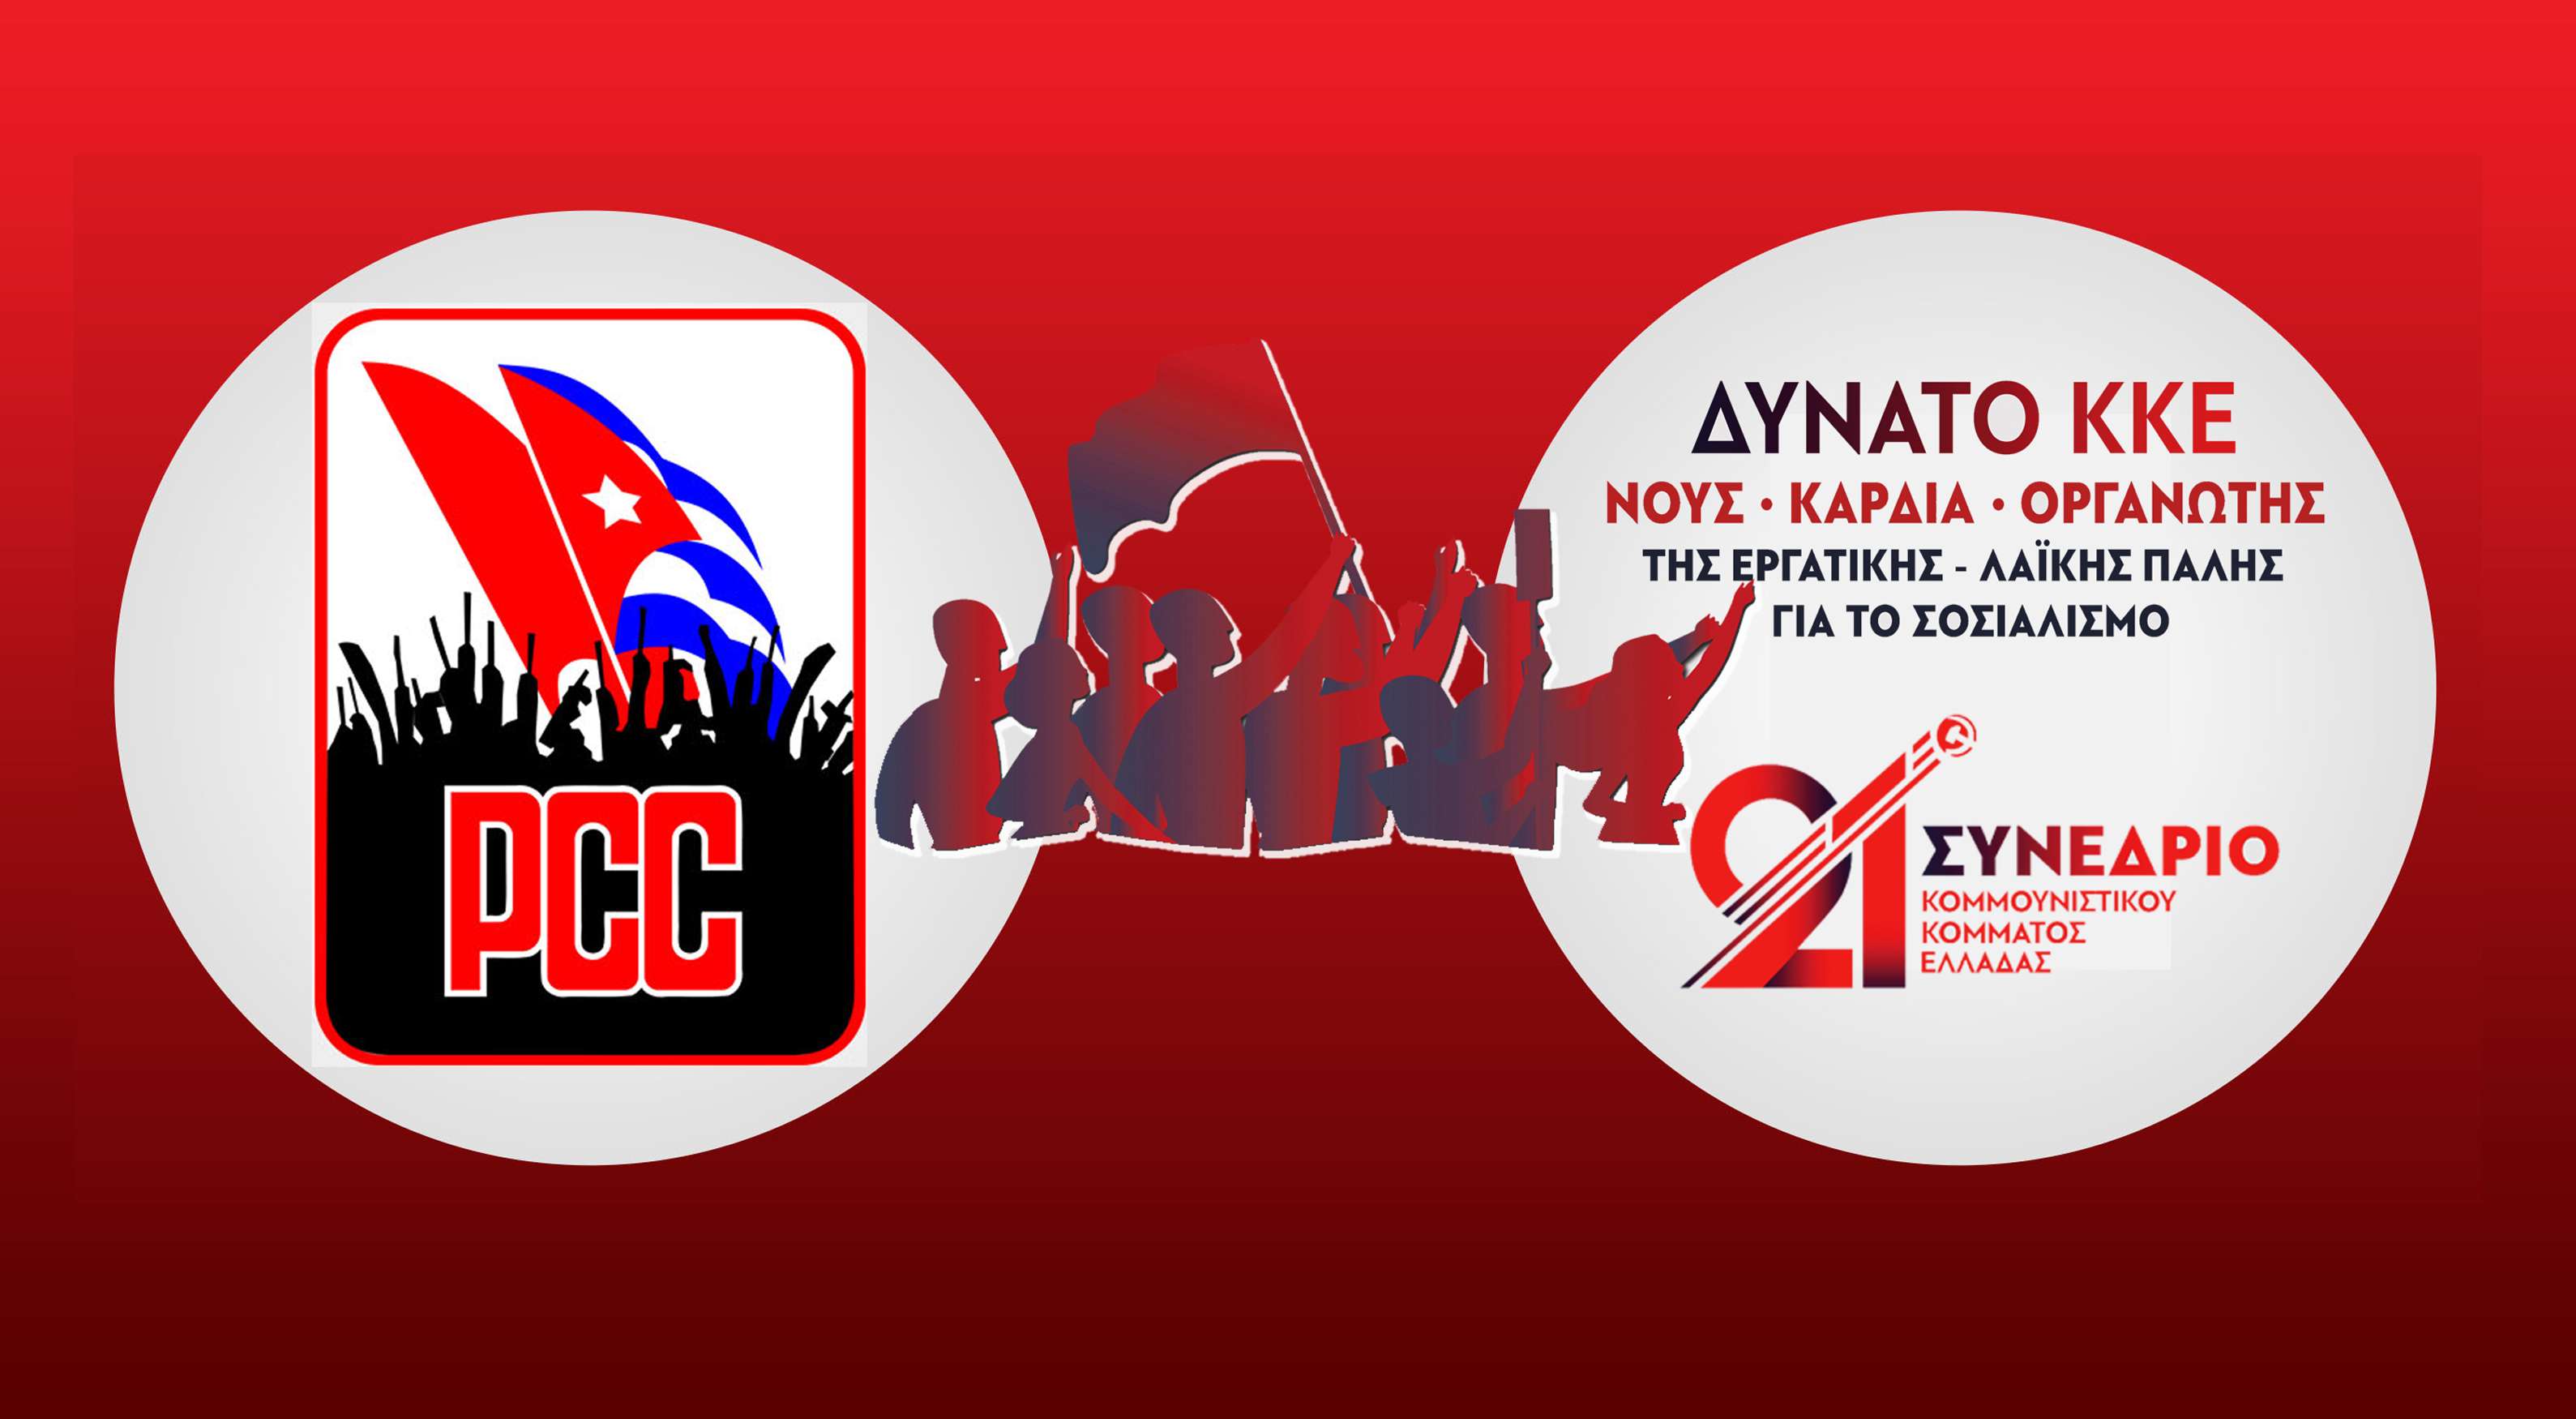 Mensaje de saludo del Partido Comunista de Cuba en el XXI Congreso del KKE Χαιρετιστήριο μήνυμα του Κομμουνιστικού Κόμματος Κούβας στο 21ο Συνέδριο του ΚΚΕ